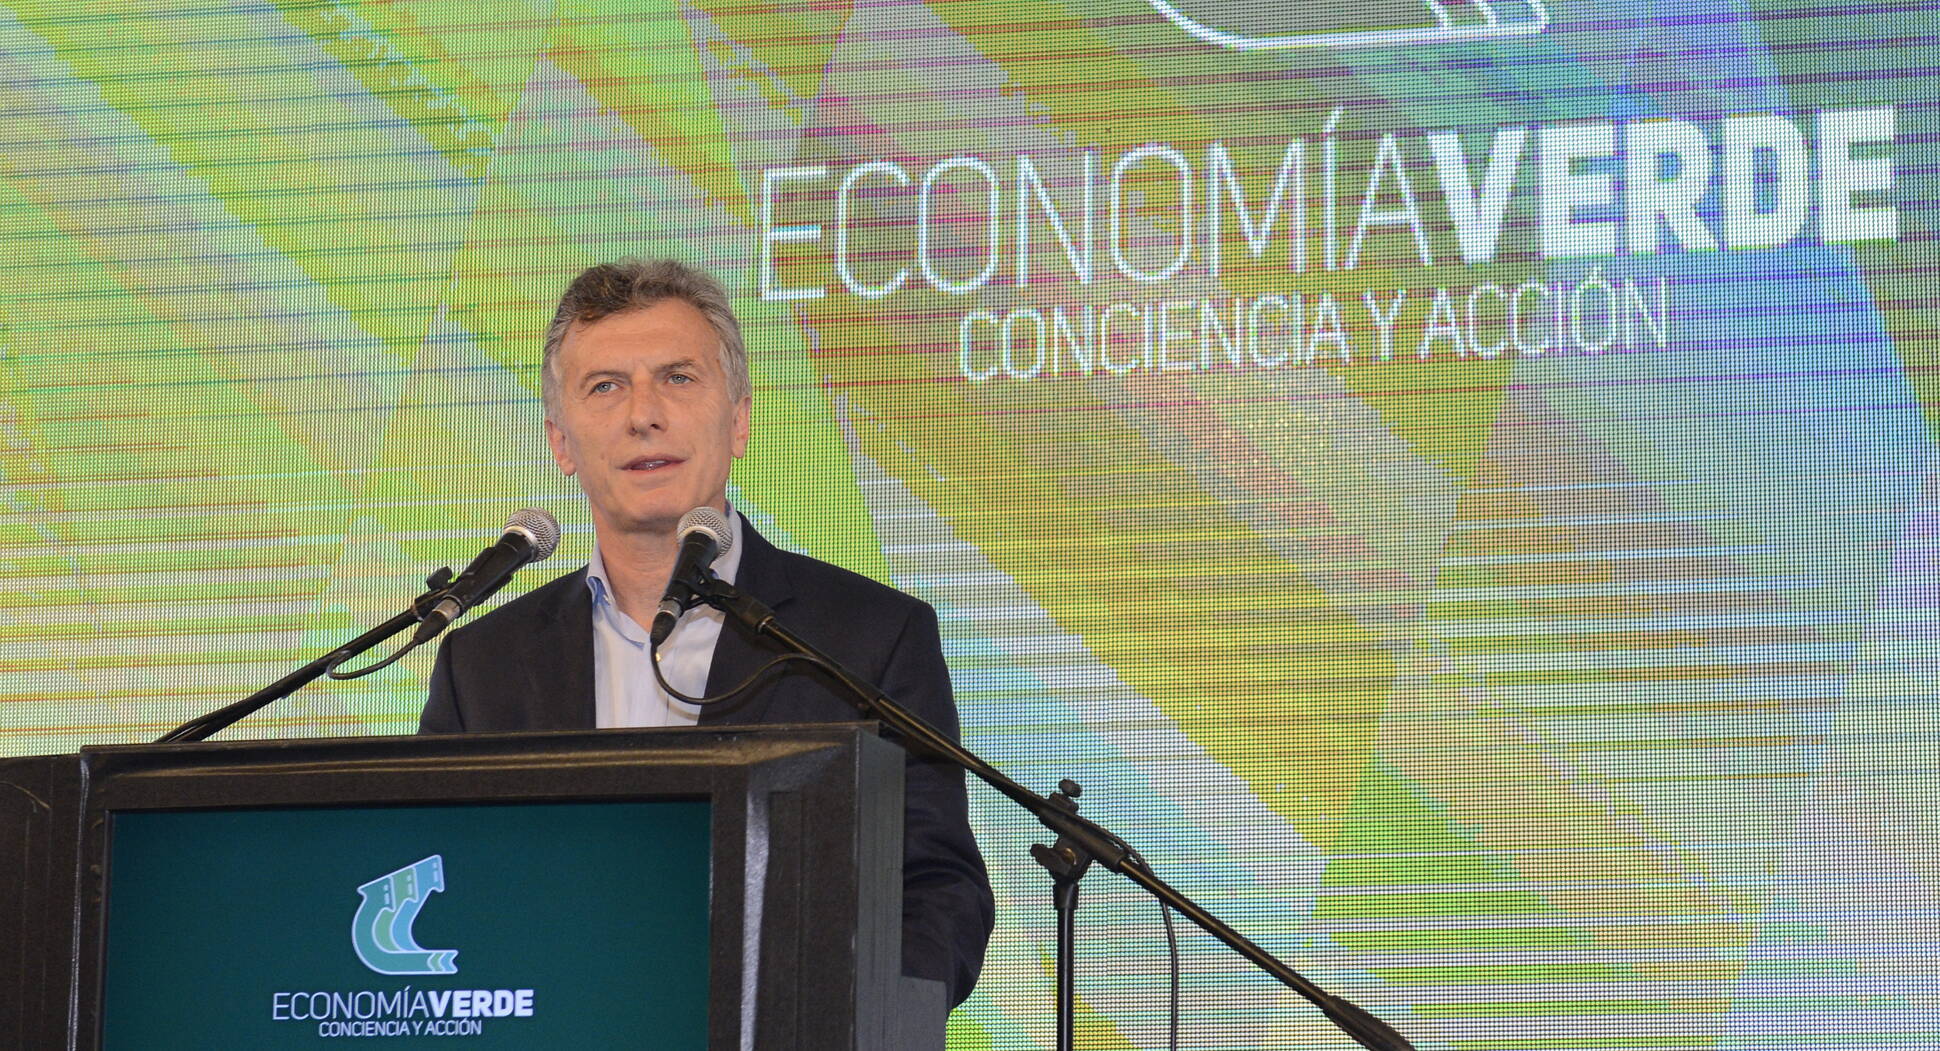 El presidente Macri llamó a “despertar conciencia y generar acciones” para cuidar el planeta